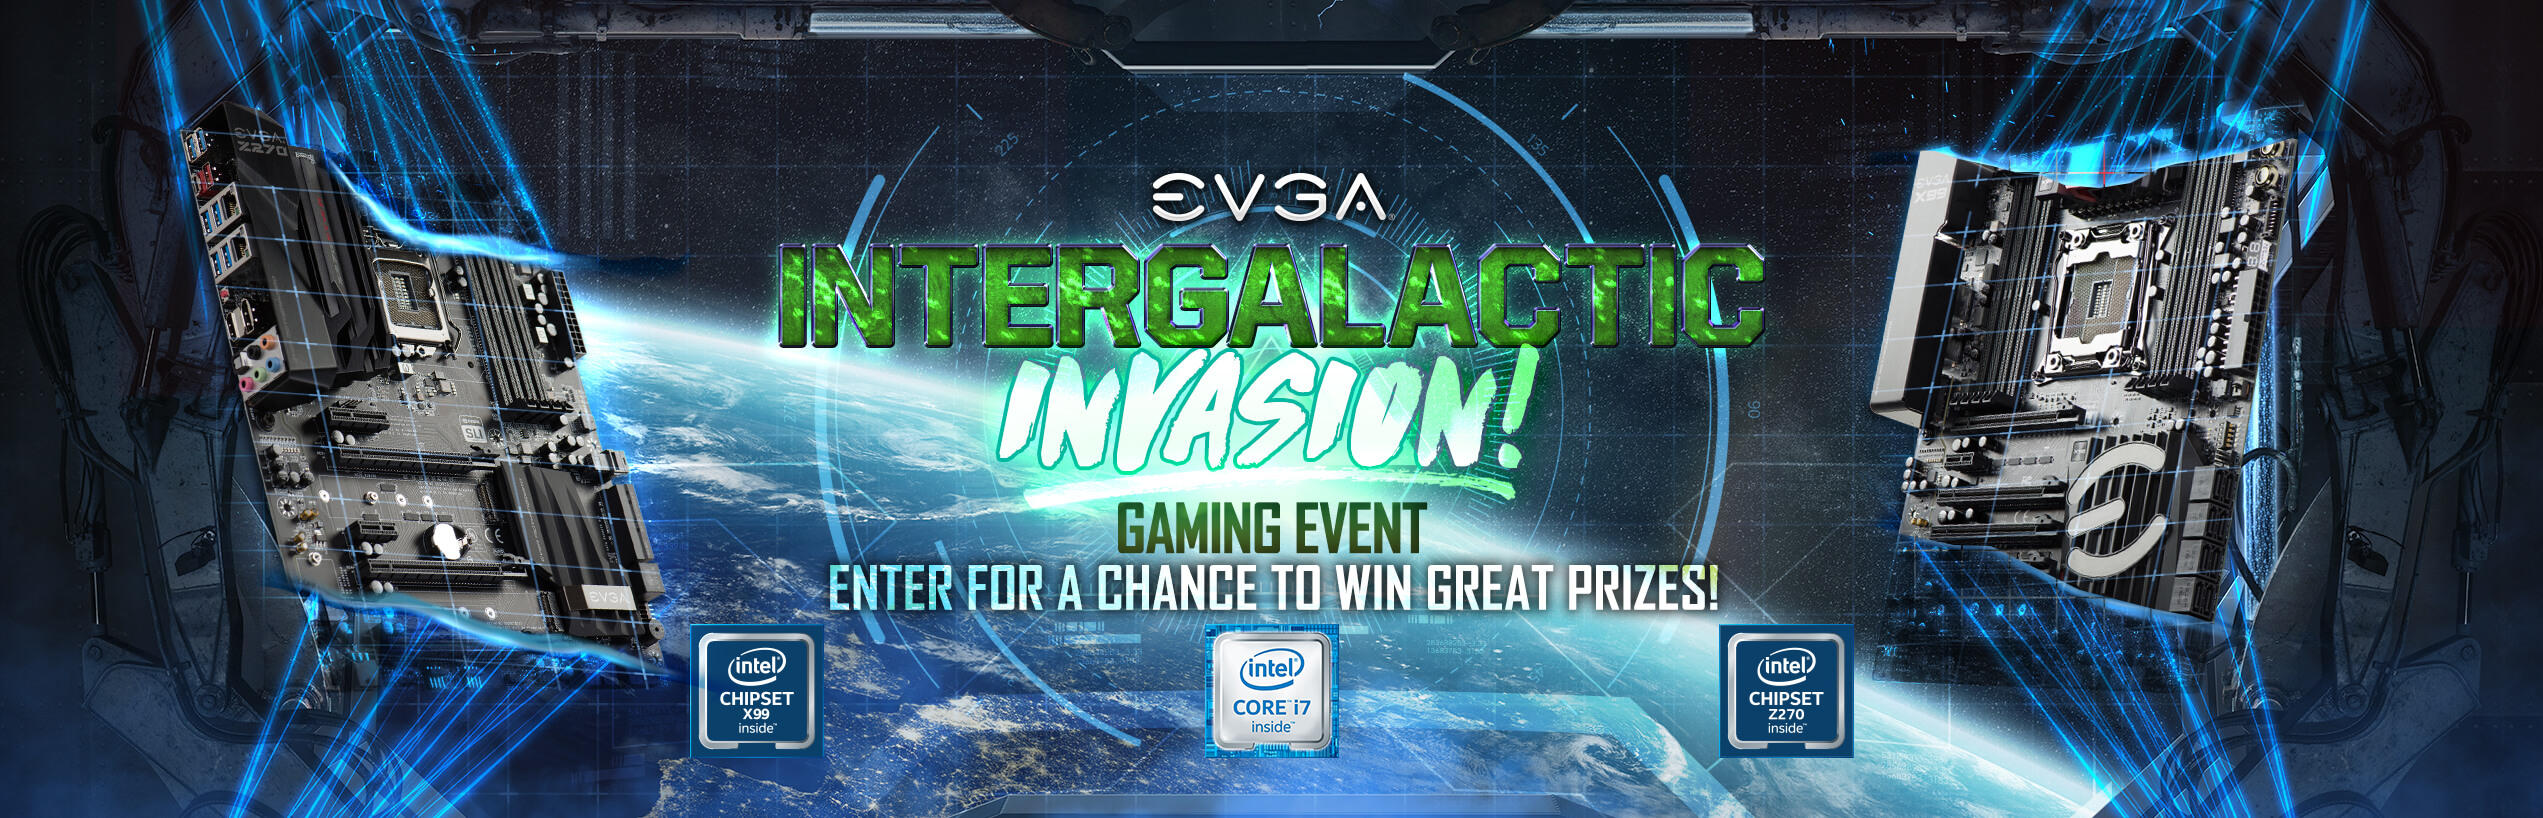 Intergalactic Invasion! Gaming Event